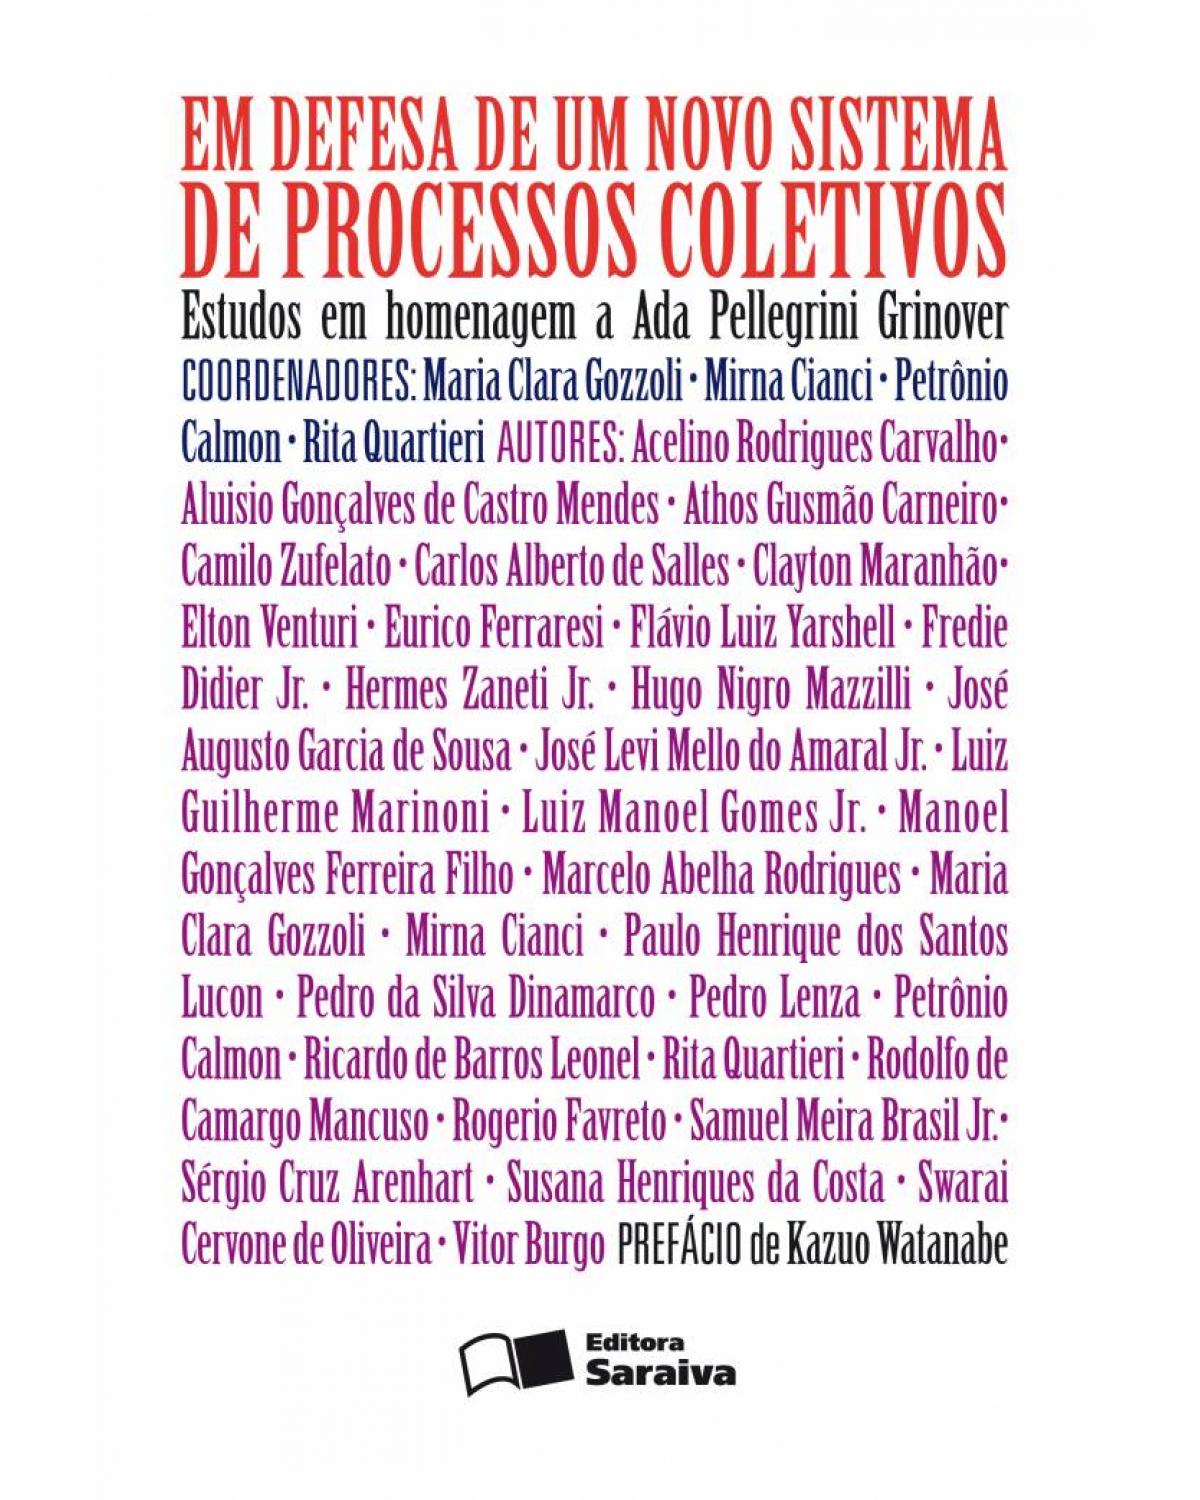 Em defesa de um novo sistema de processos coletivos - estudos em homenagem à professora Ada Pellegrini Grinover - 1ª Edição | 2010